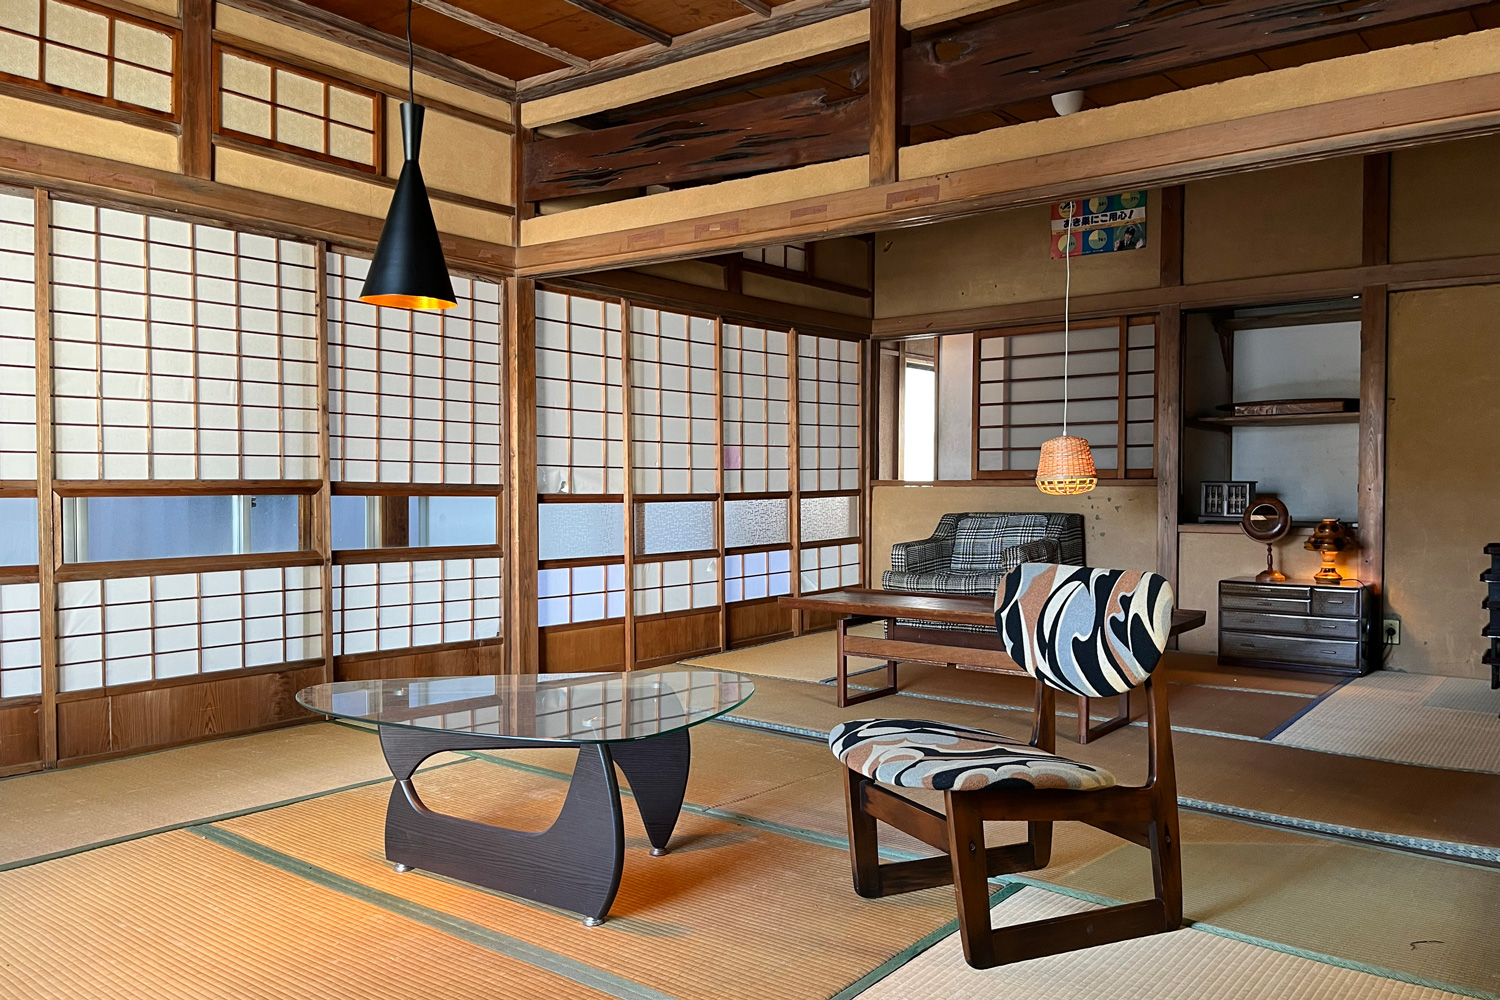 昭和の２階建一軒家、１Fはウッドと珪藻土壁のギャラリー空間、メタリックの部屋、２Fは広い和室とアパート部屋、様々な設定で撮影可能